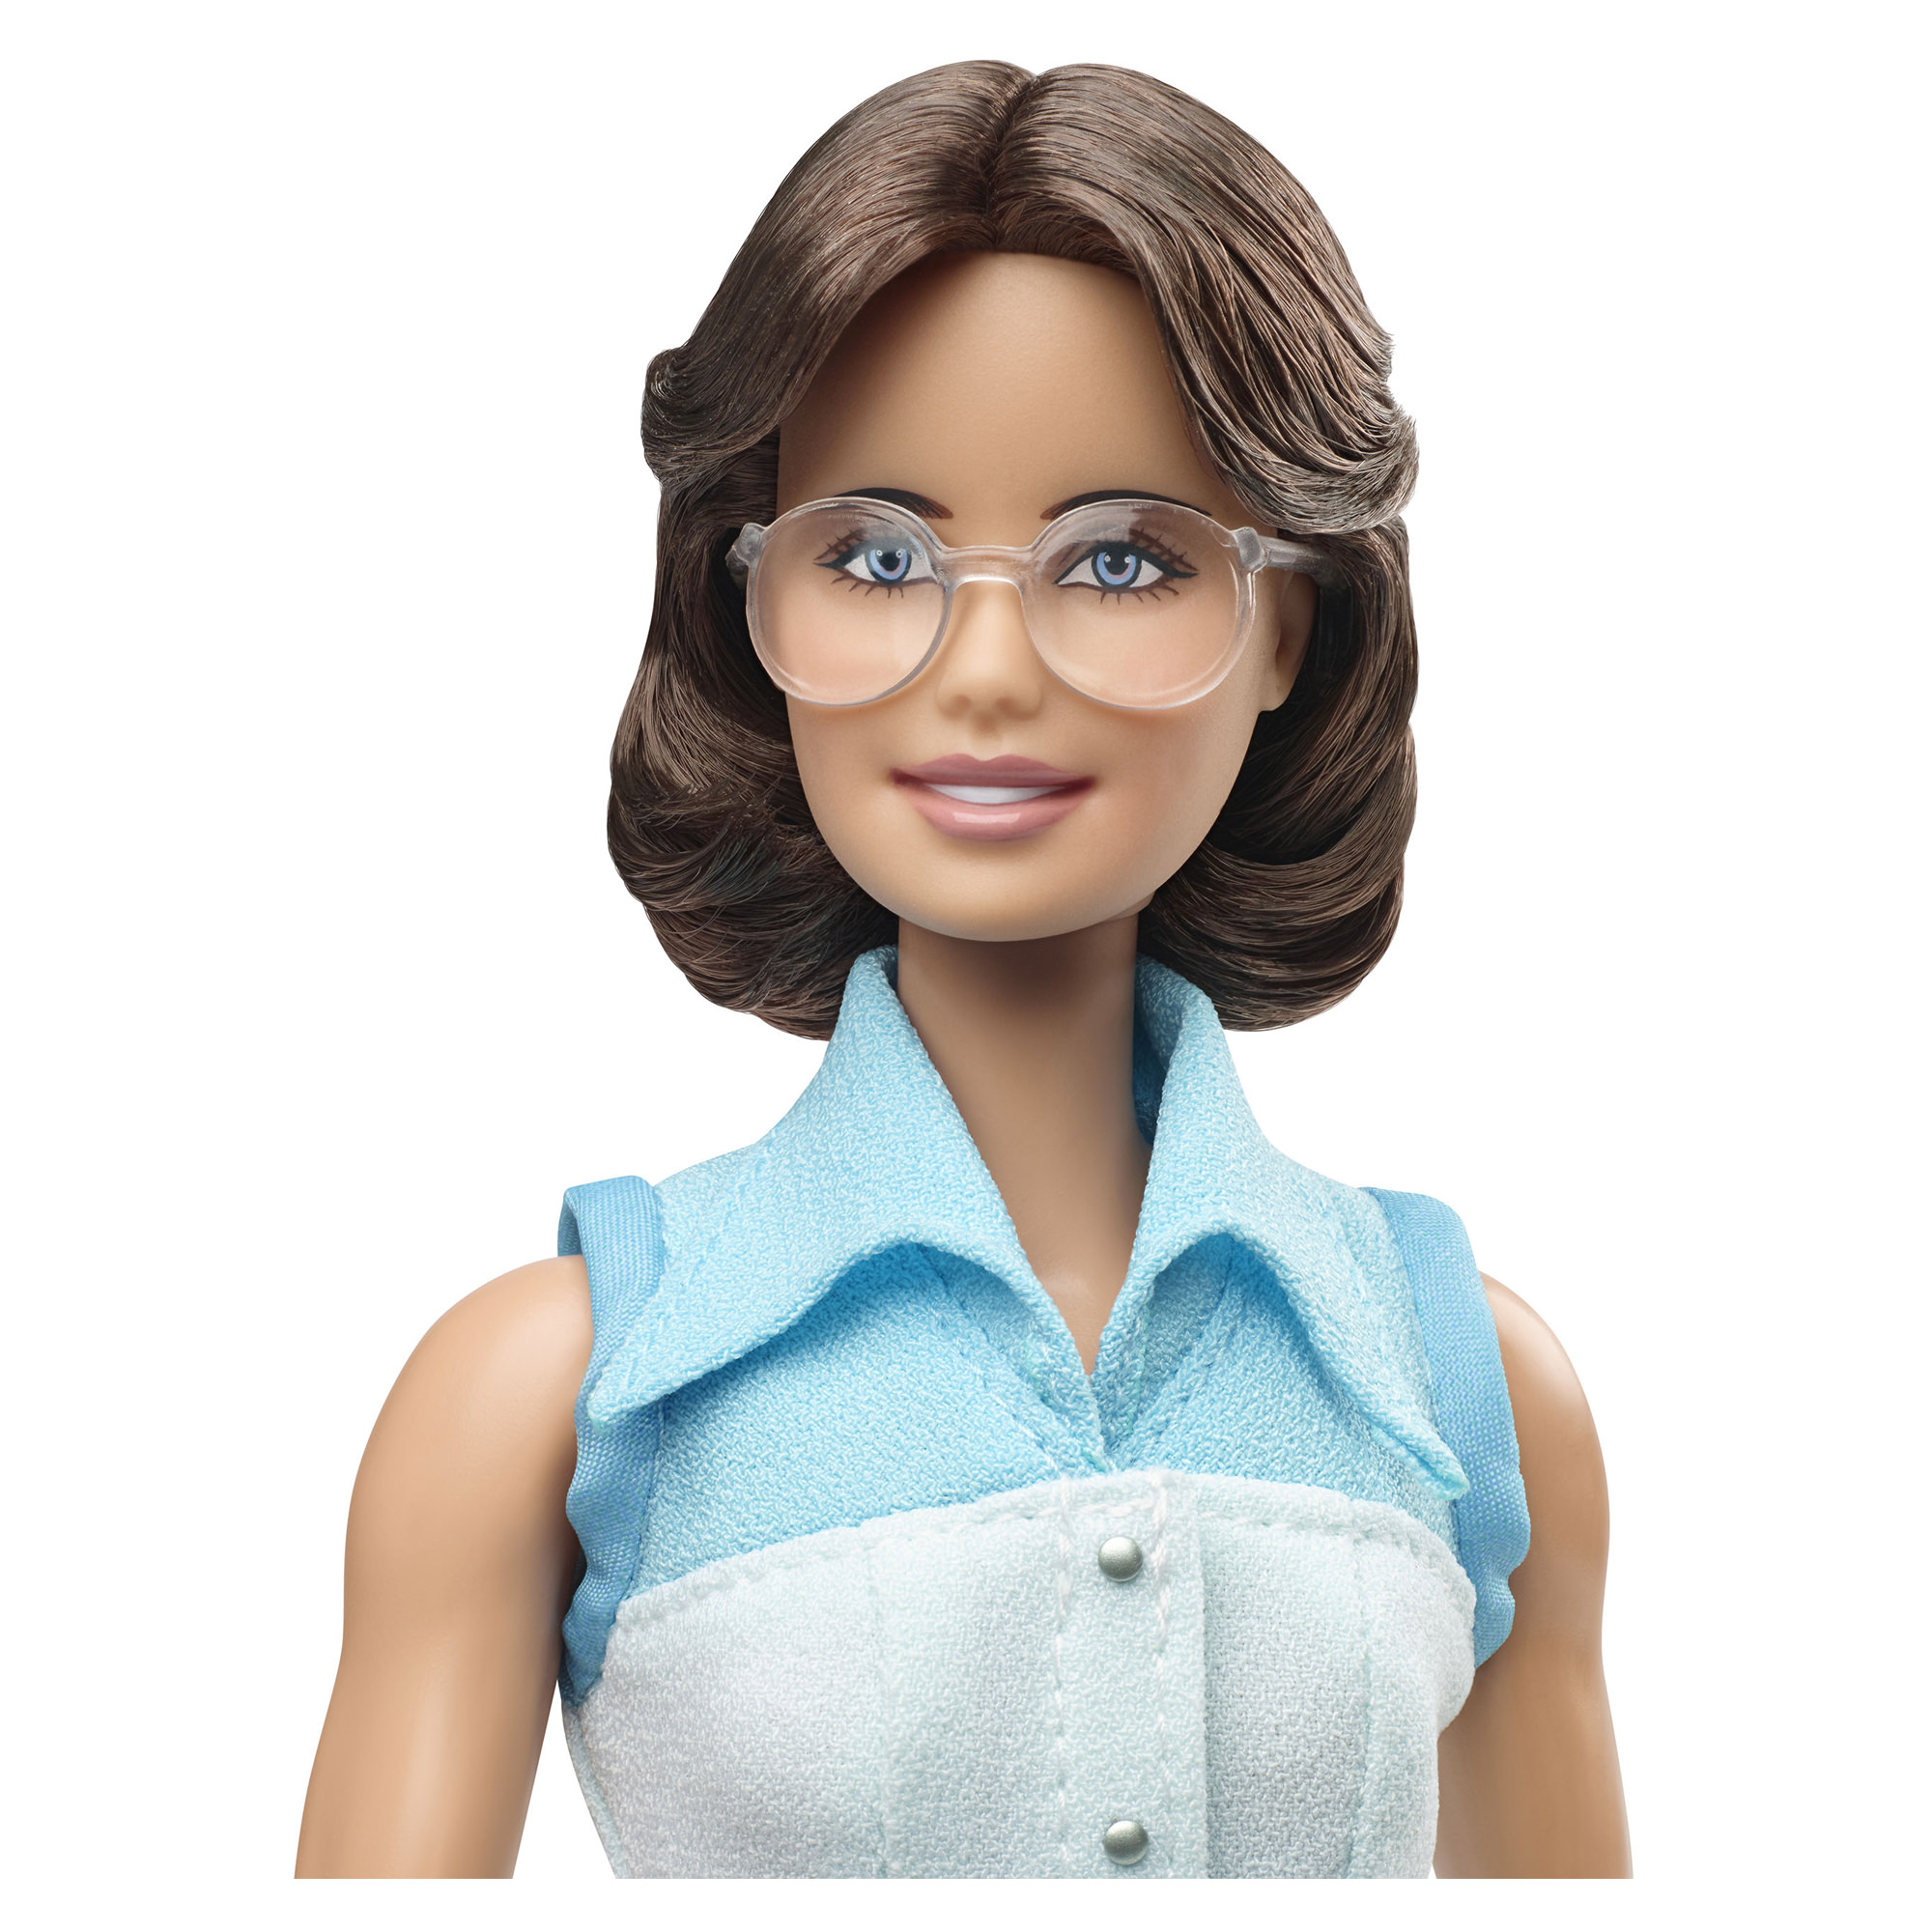 Mattel Barbie inspirující ženy Billie Jean King